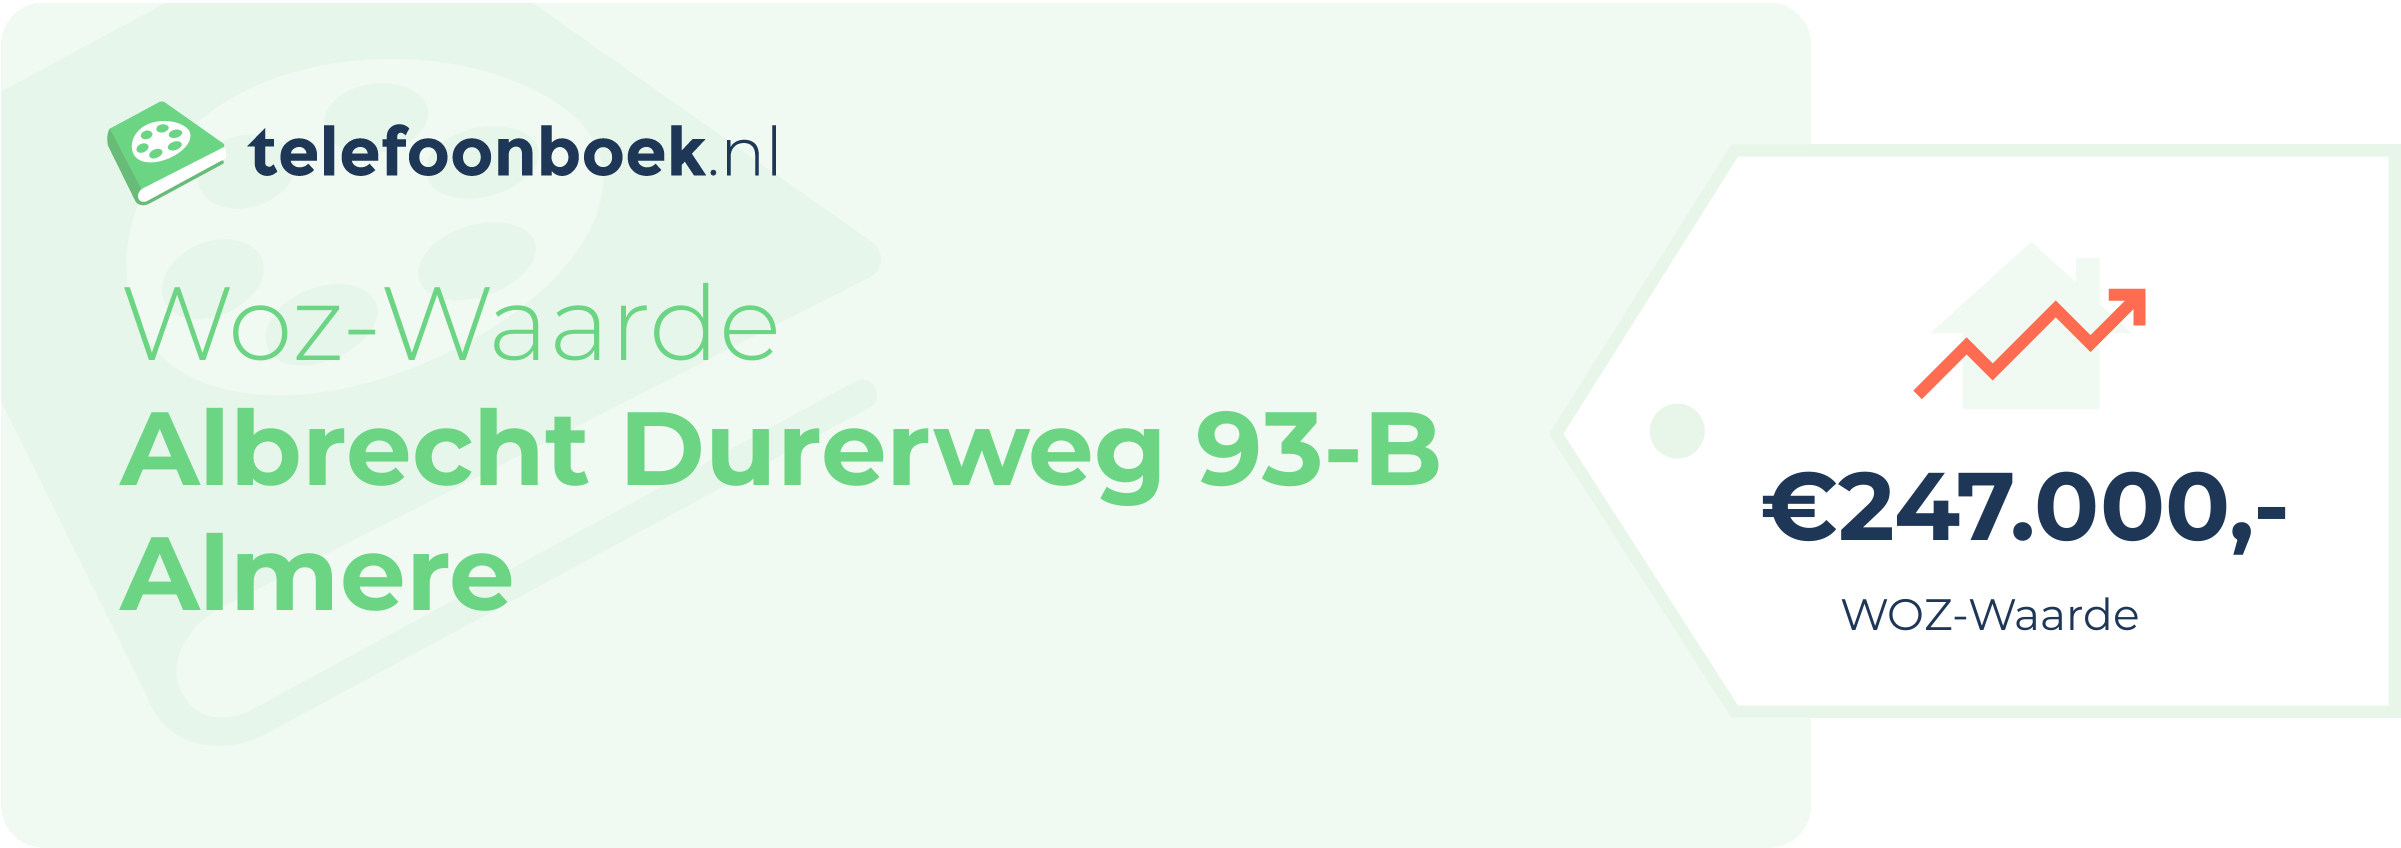 WOZ-waarde Albrecht Durerweg 93-B Almere